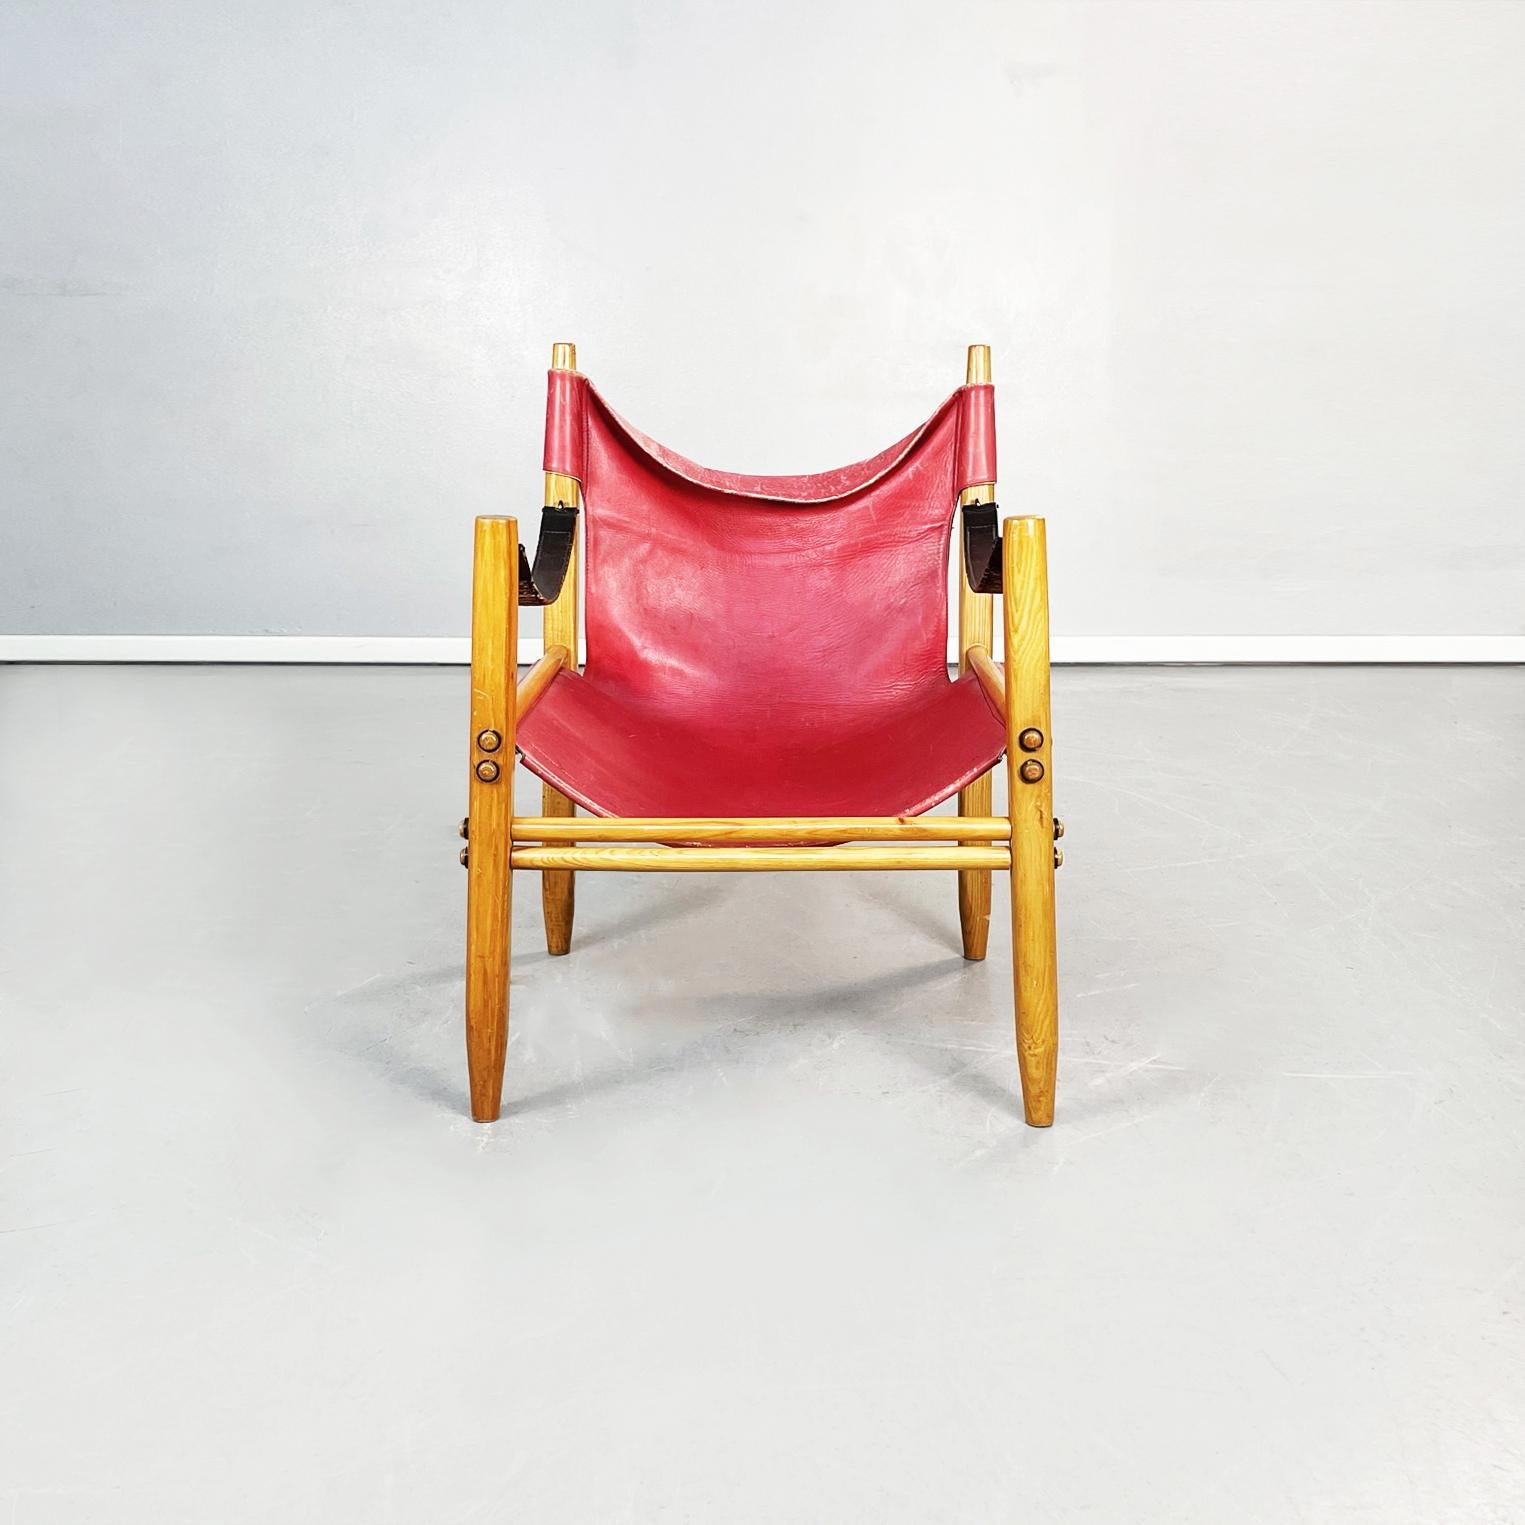 Italienische Mitte des Jahrhunderts Leder- und Holzsessel Oasi 85 von Legler für Zanotta, 1960er Jahre
Sessel mod. Oasi 85 aus rotem Leder und Holz. Sitz und Rückenlehne sind aus weichem rotem Leder, das an der Struktur befestigt ist. Die Armlehnen